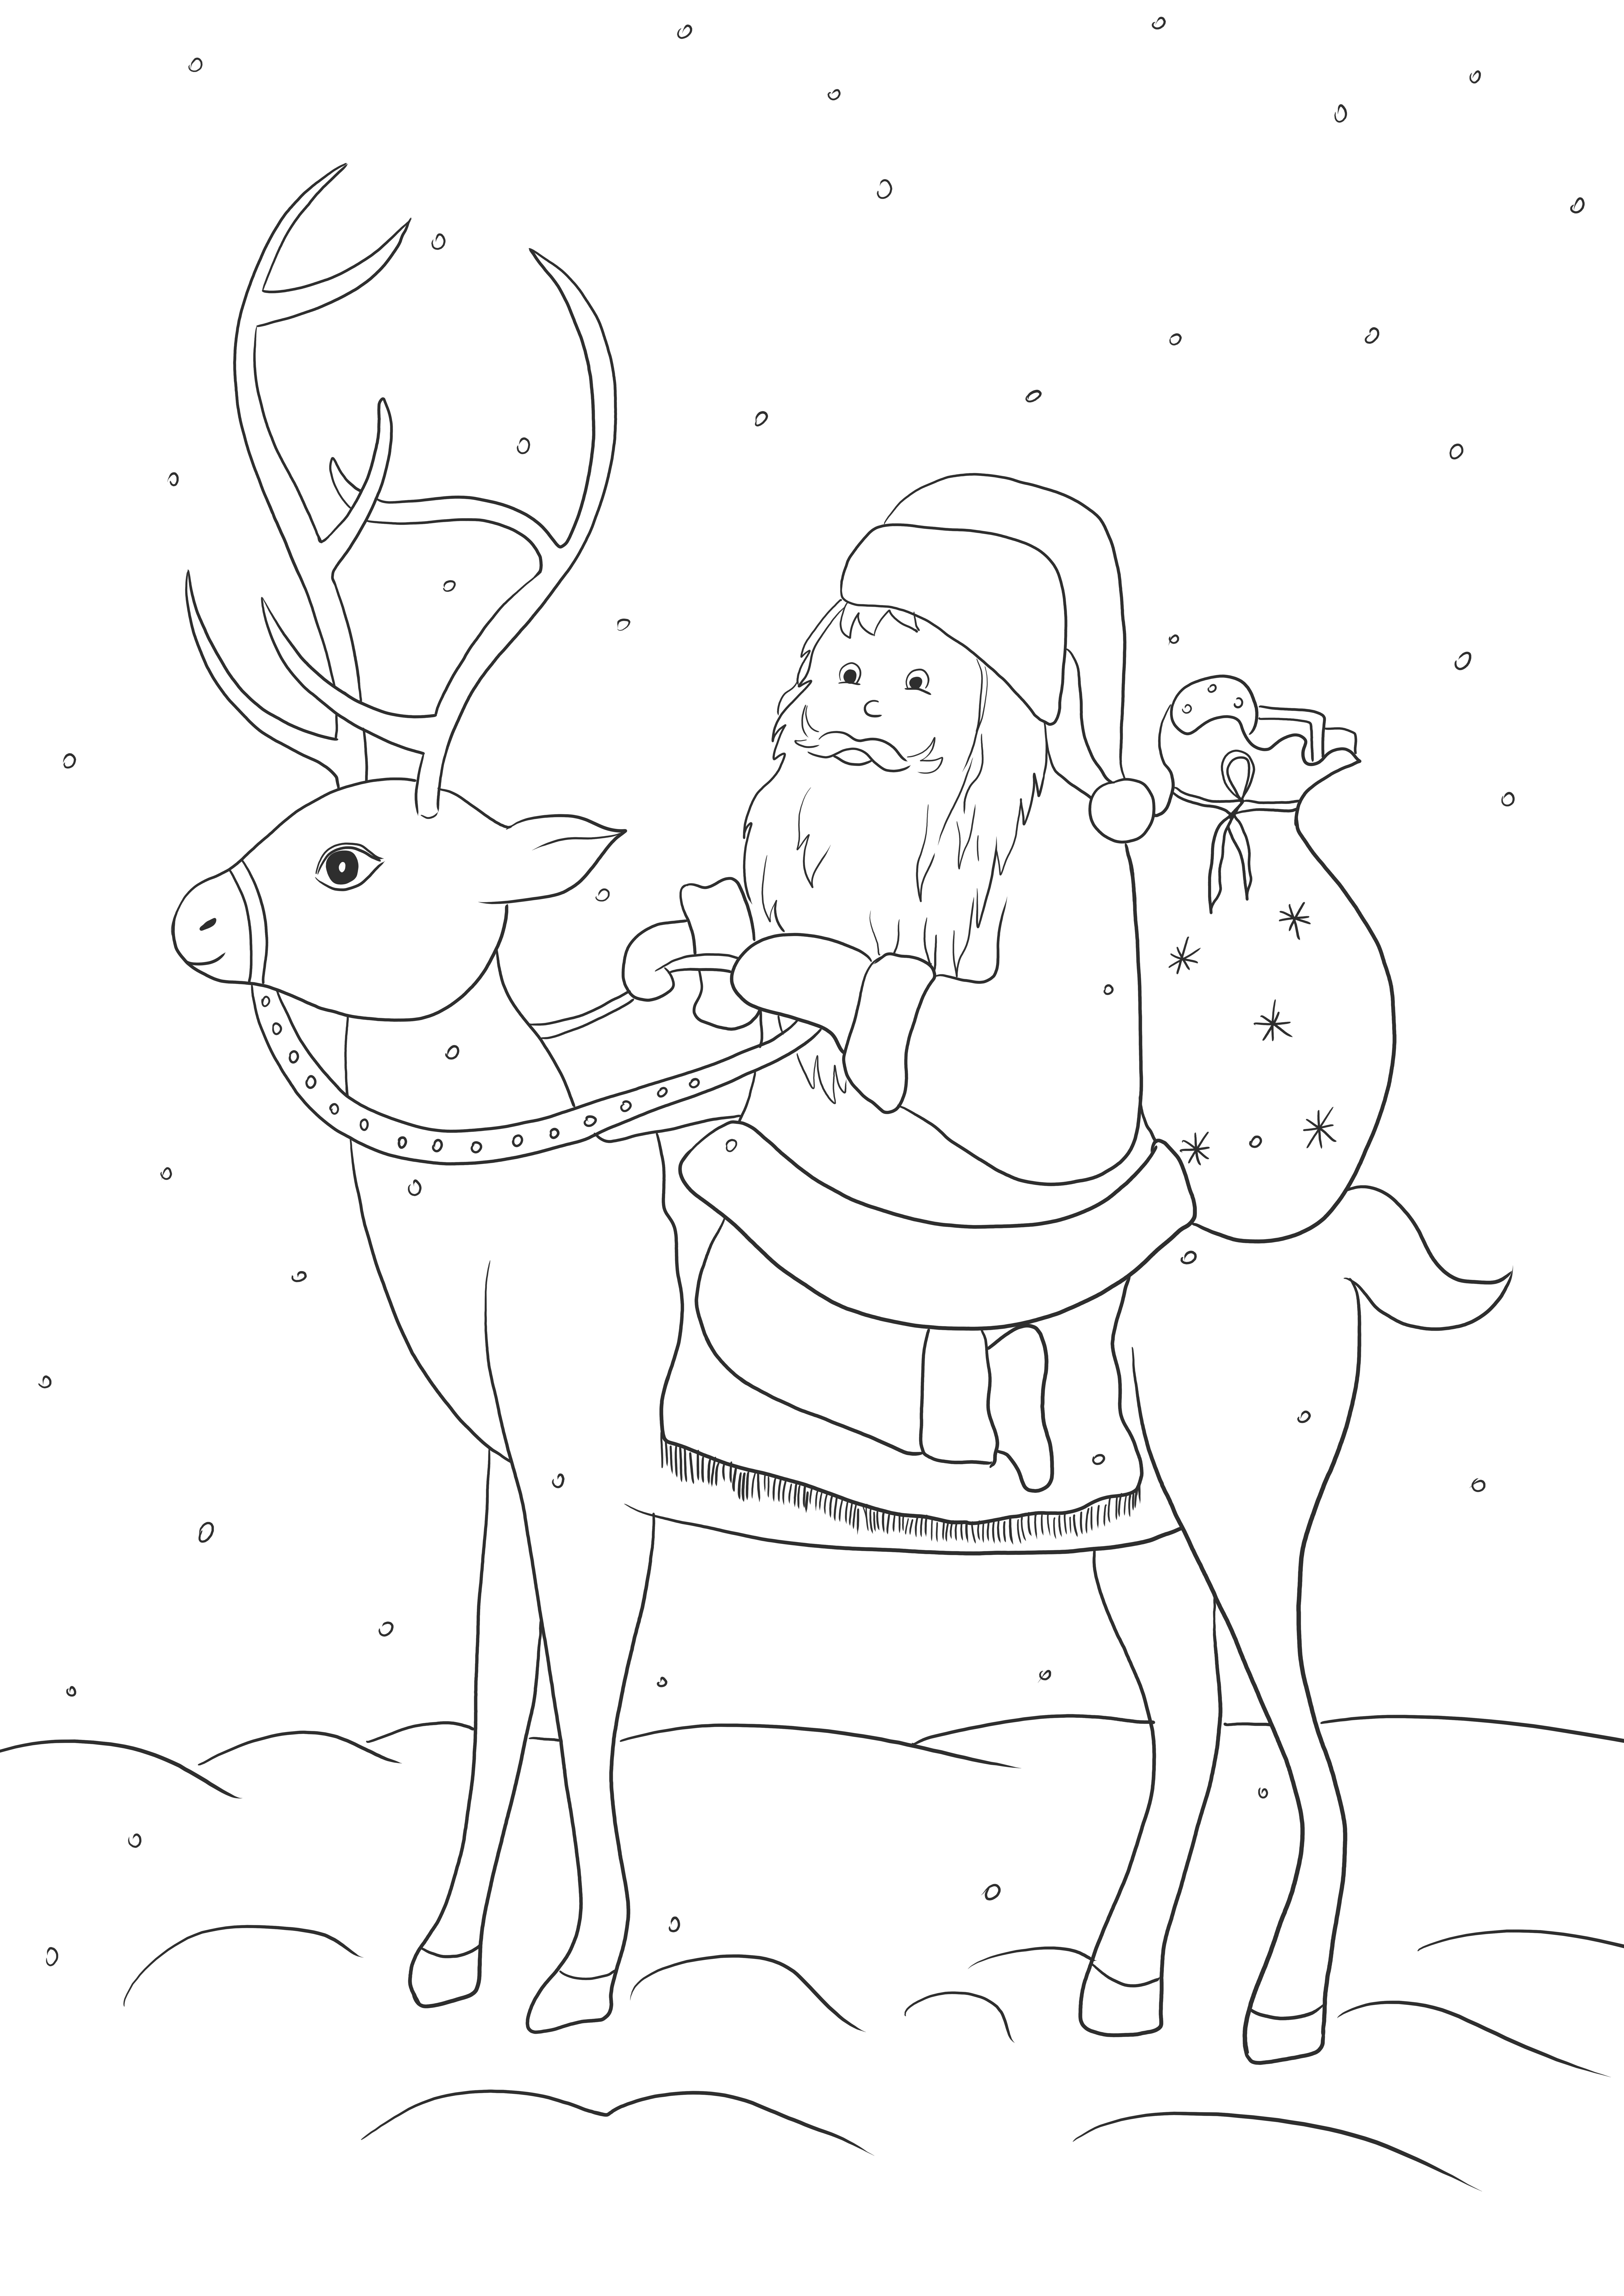 Immagine di stampa della renna di Babbo Natale gratuitamente e da colorare